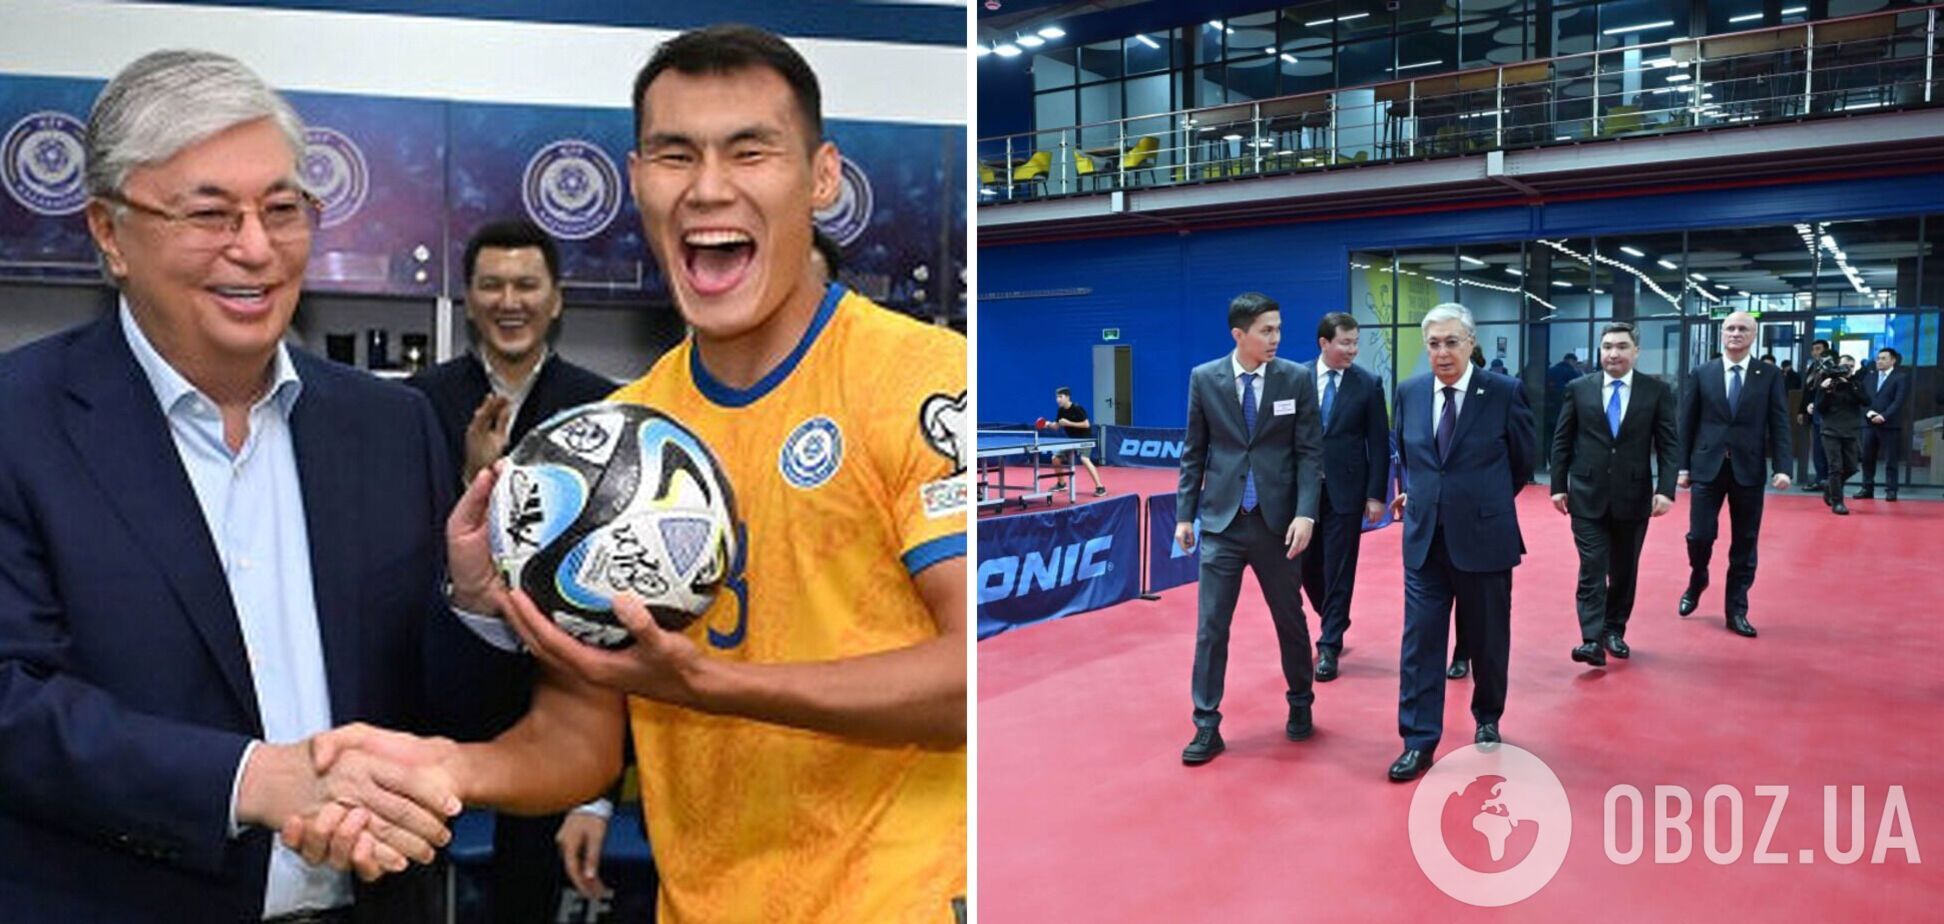 З Токаєвим сталося 'справжнє диво' на футболі: у Росії висміяли президента Казахстану. Відео